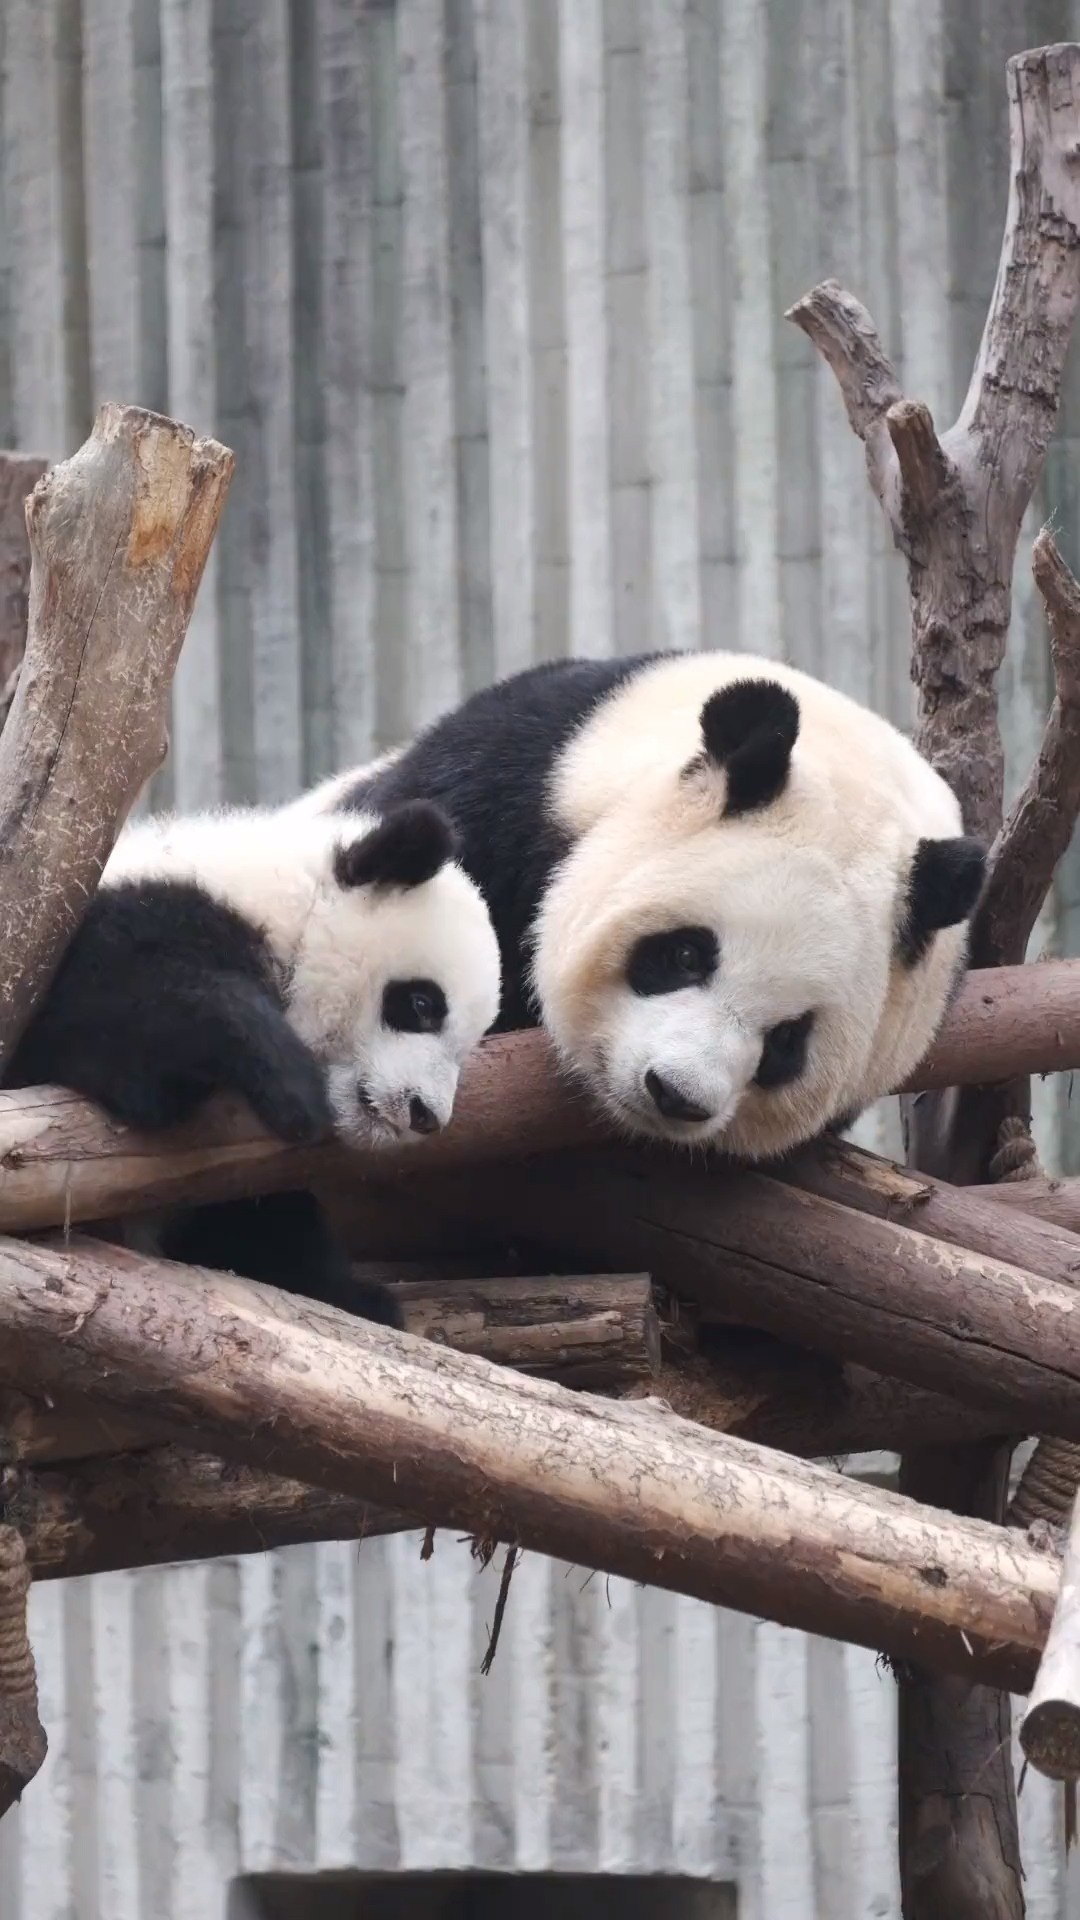 大熊猫福多多的妈妈图片